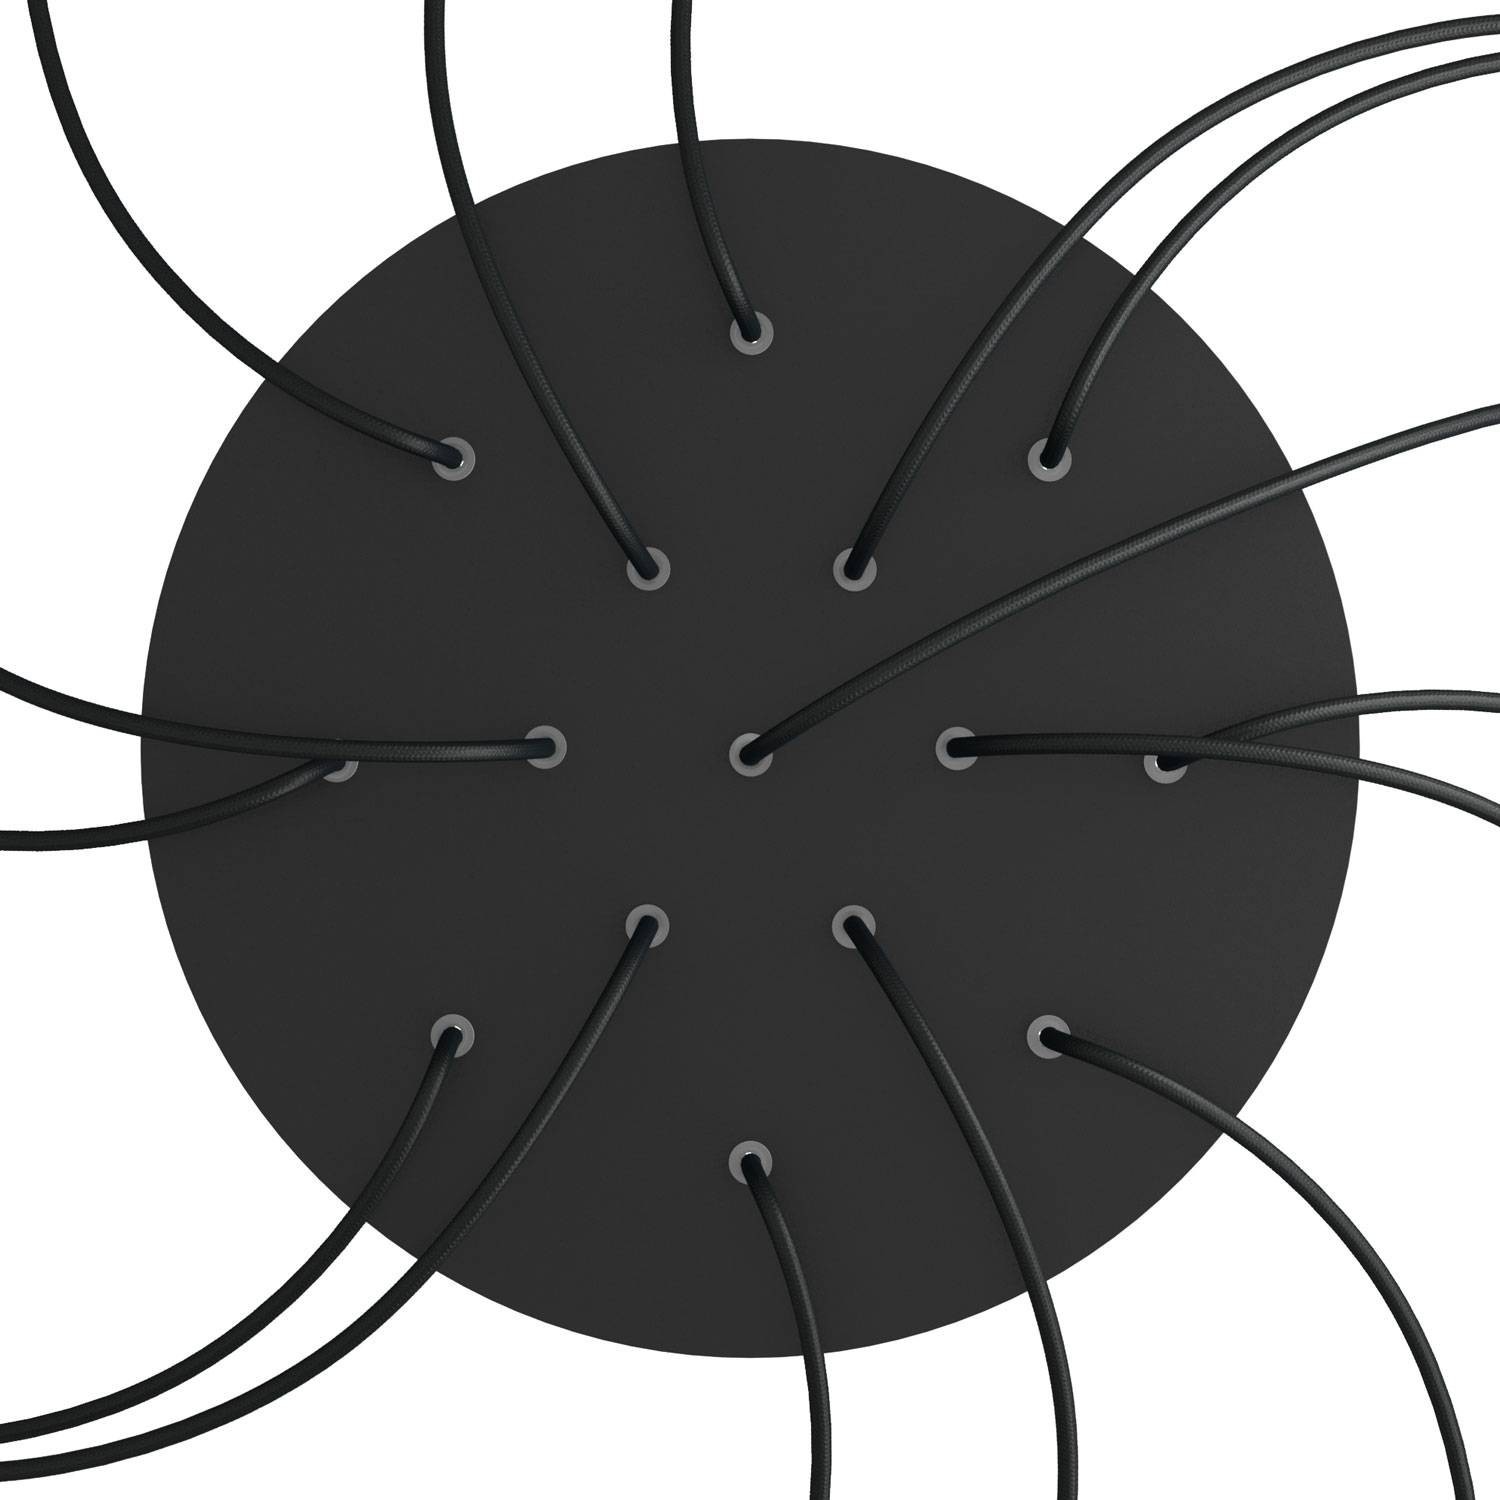 Sistema completo Rose-One redondo de 400 mm de diámetro y 15 agujeros